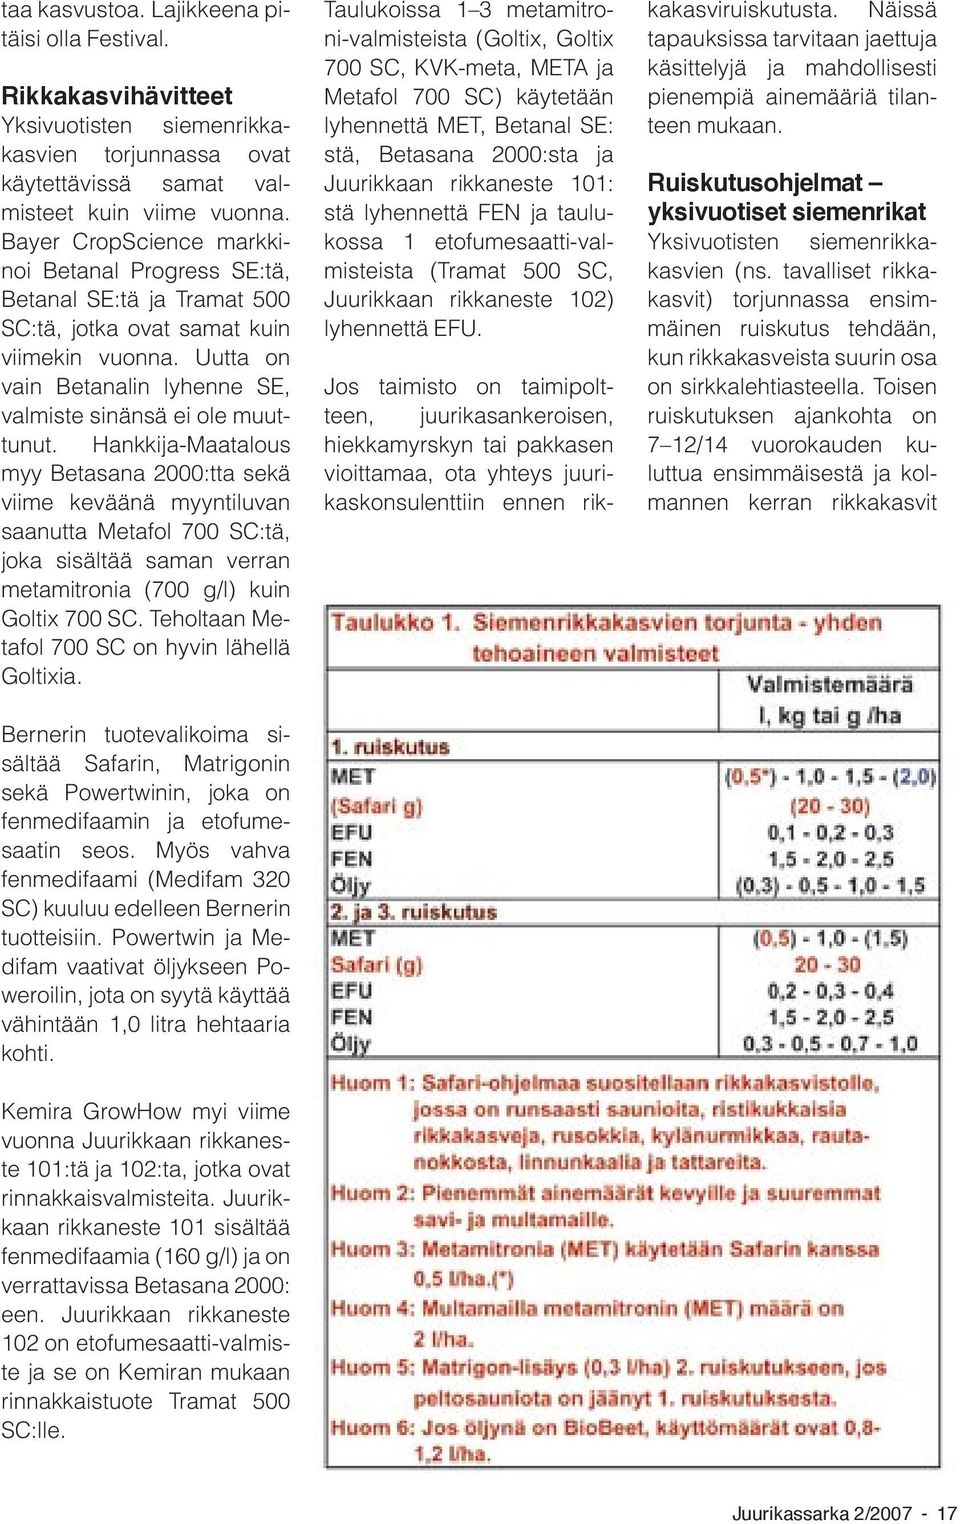 Hankkija-Maatalous myy Betasana 2000:tta sekä viime keväänä myyntiluvan saanutta Metafol 700 SC:tä, joka sisältää saman verran metamitronia (700 g/l) kuin Goltix 700 SC.